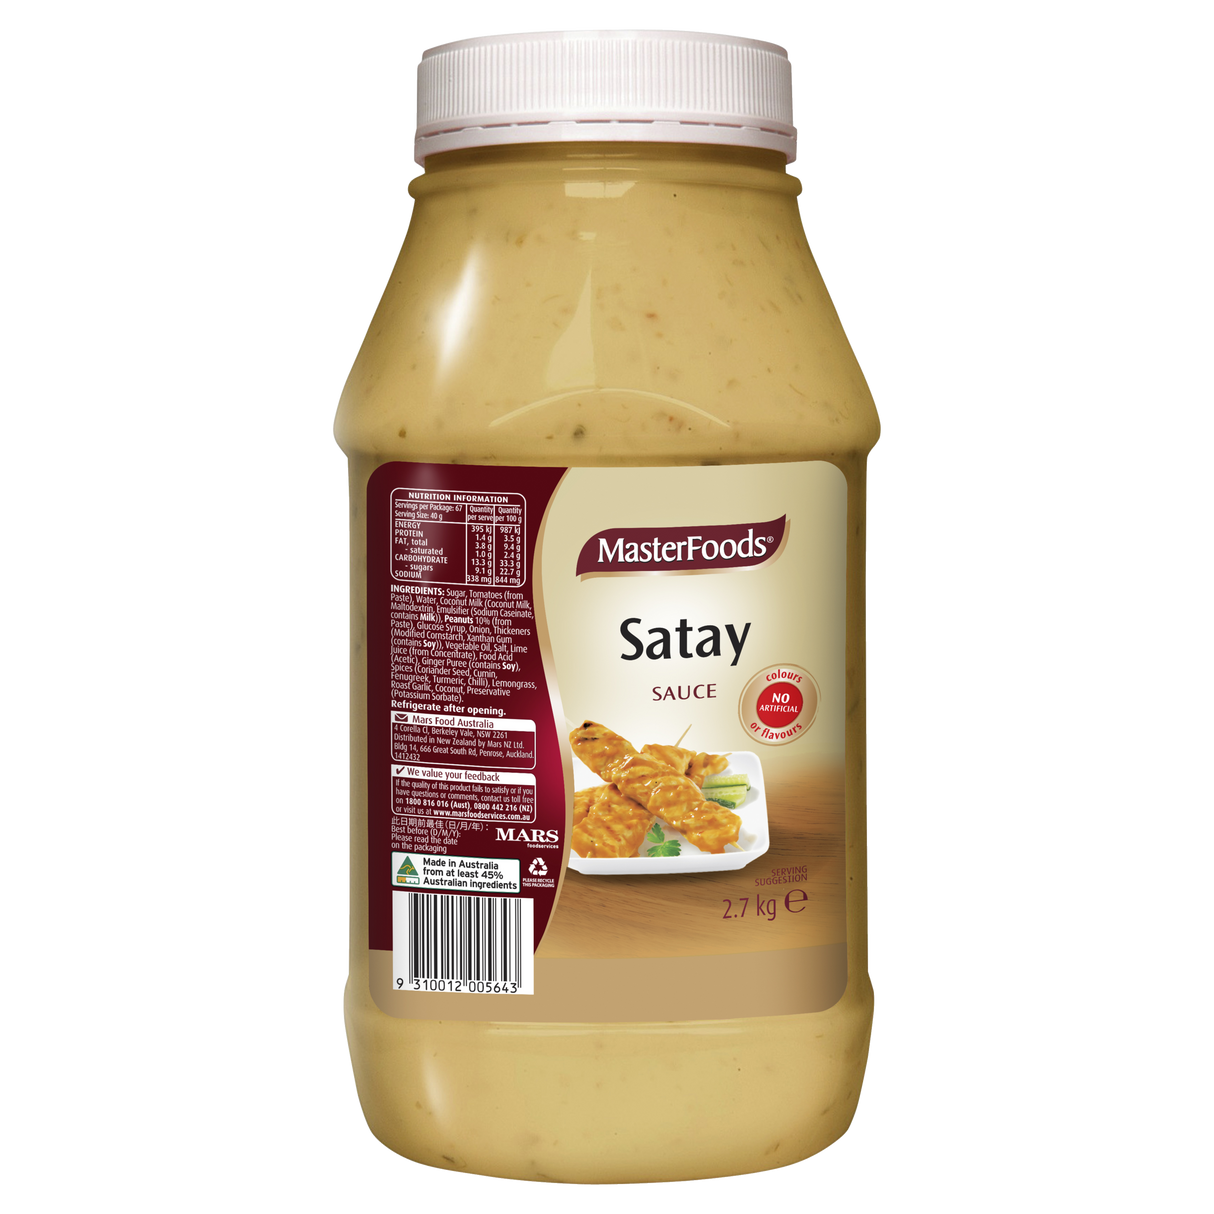 MasterFoods Satay Sauce 2.7kg